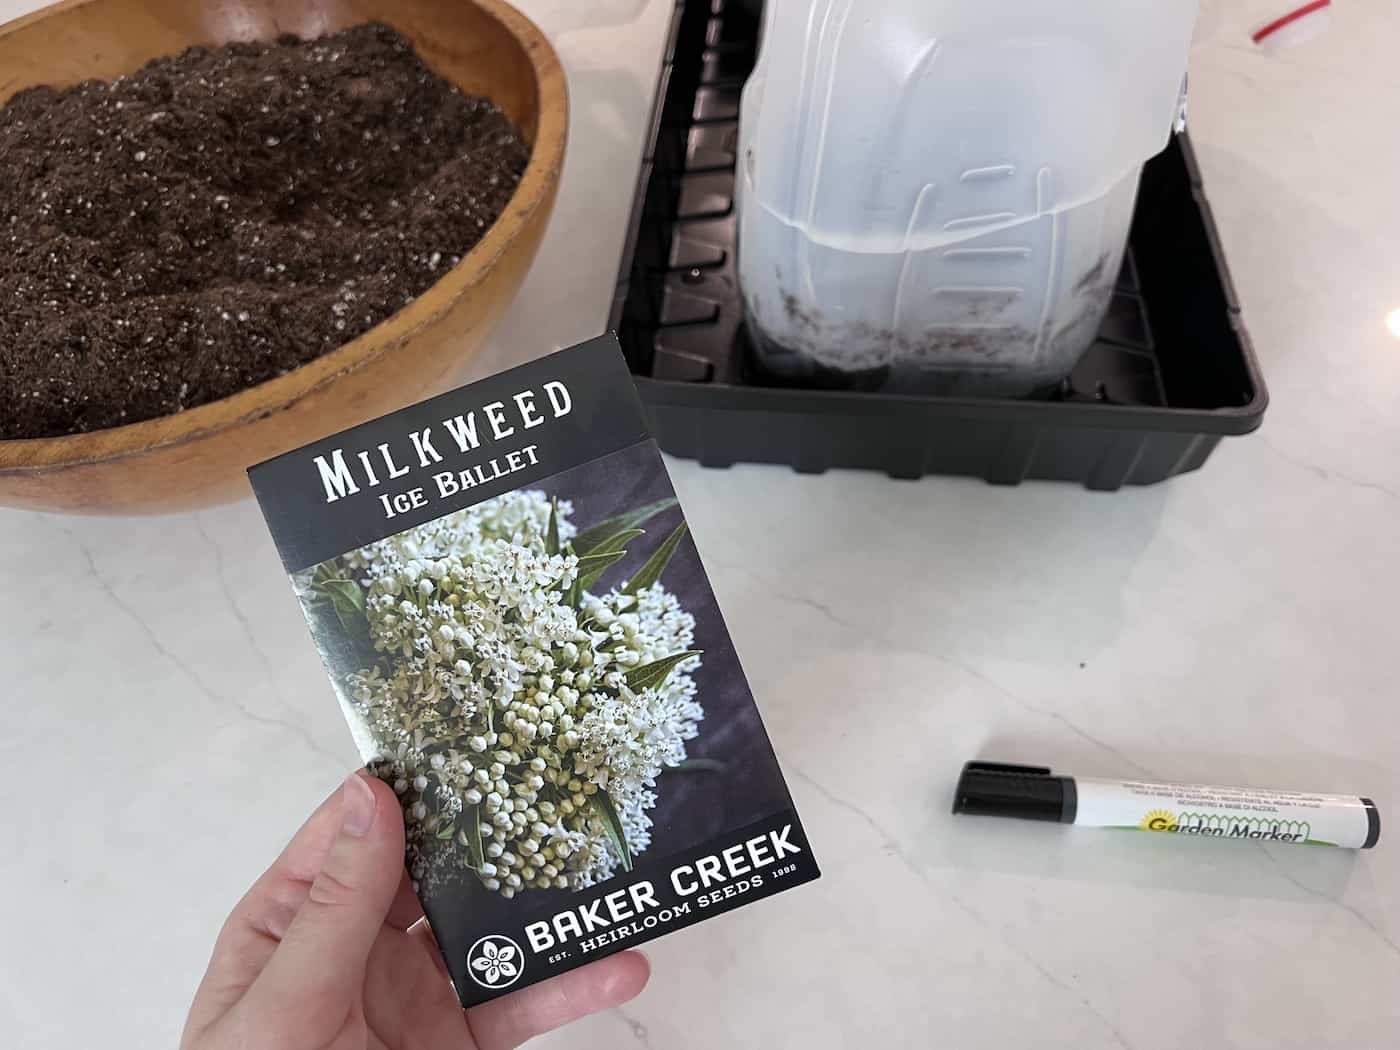 Milkweed seeds - ice ballet